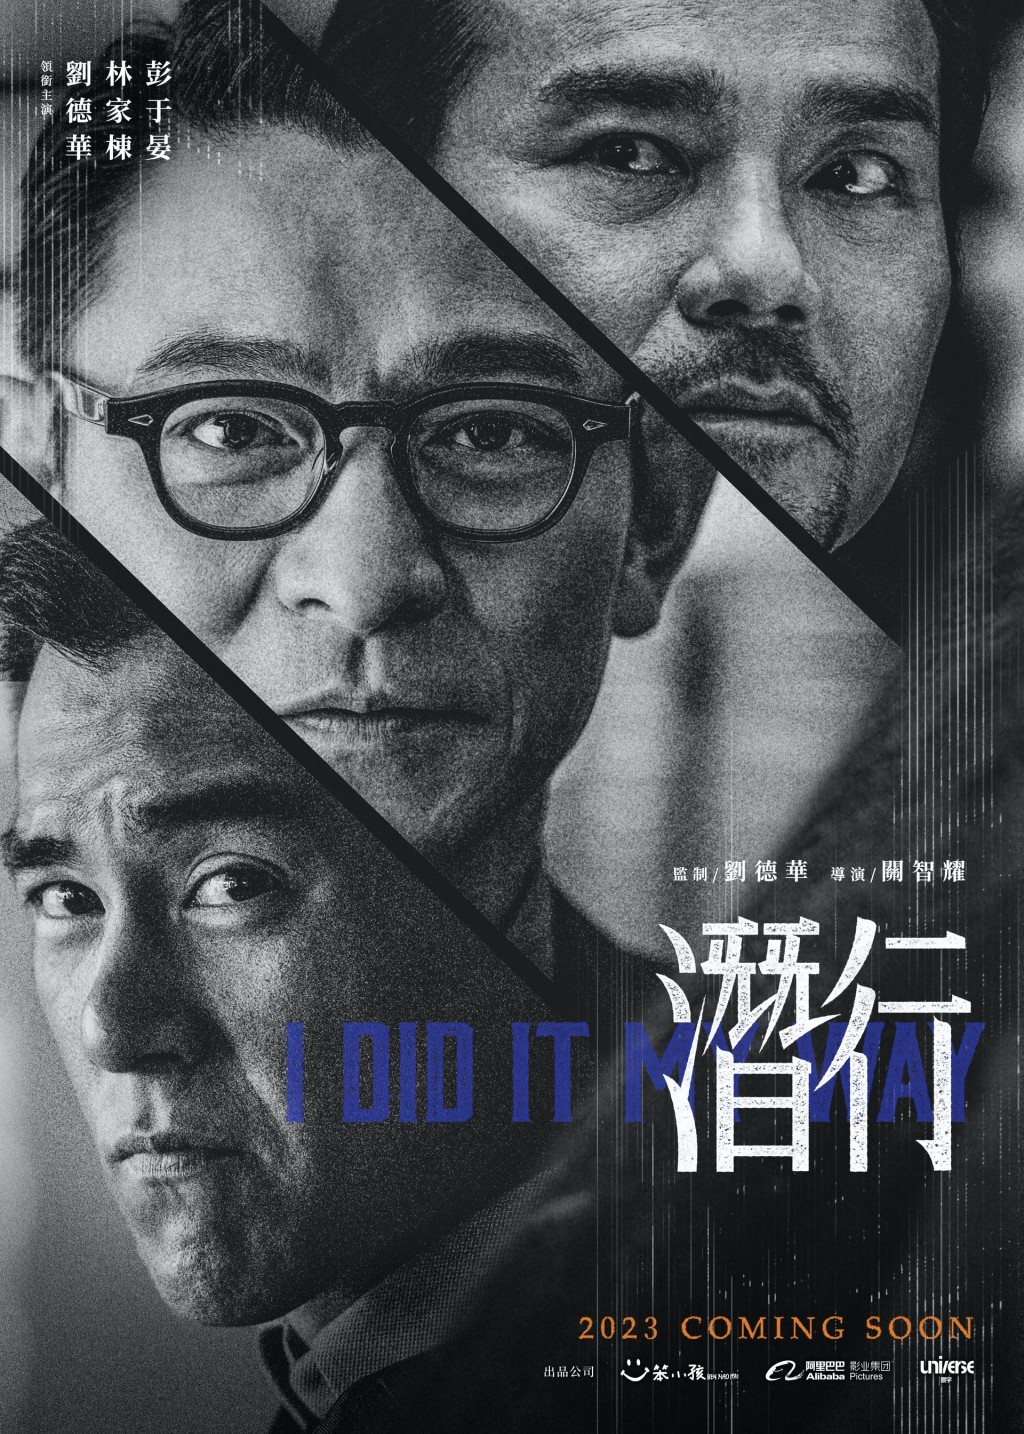 不过在今年12月，彭于晏与刘德华、林家栋主演的港产片《潜行》预计将在内地上映。